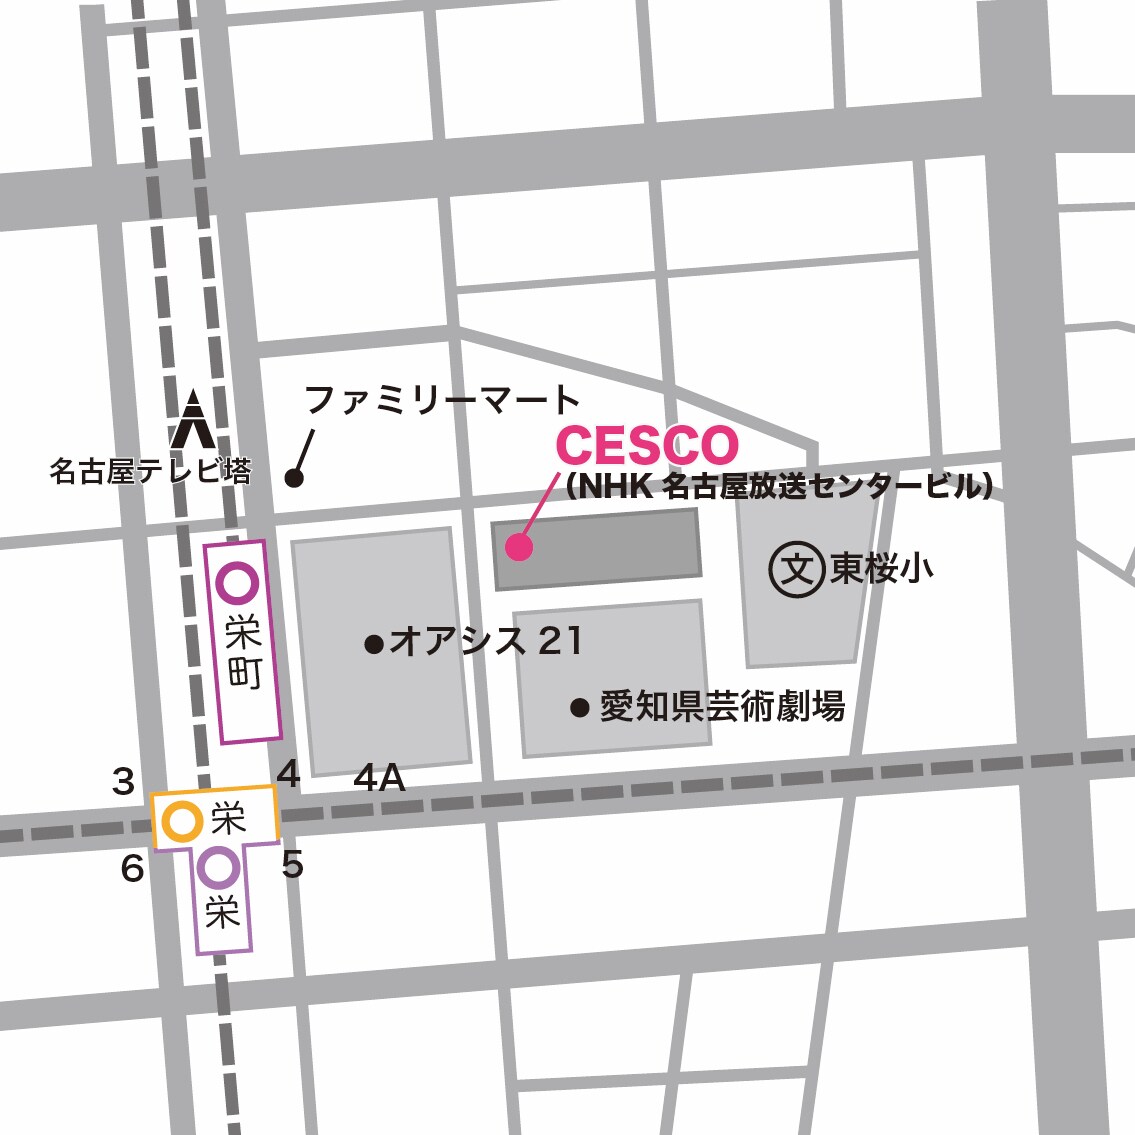 CESCO様の会社案内地図